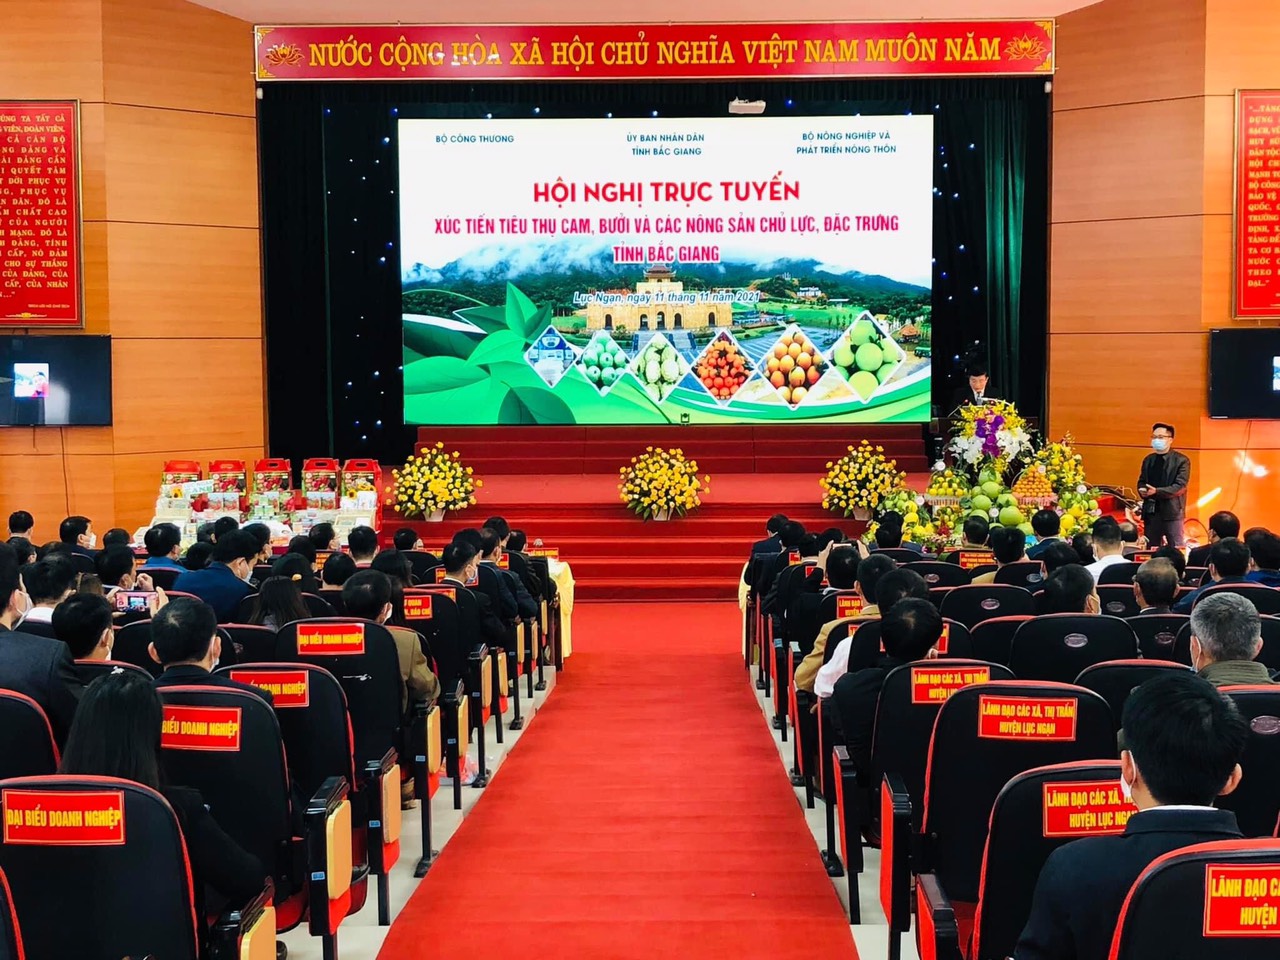 Bắc Giang: Tổ chức hội nghị trực tuyến xúc tiến tiêu thụ cam, bưởi và các sản phẩm nông sản chủ...